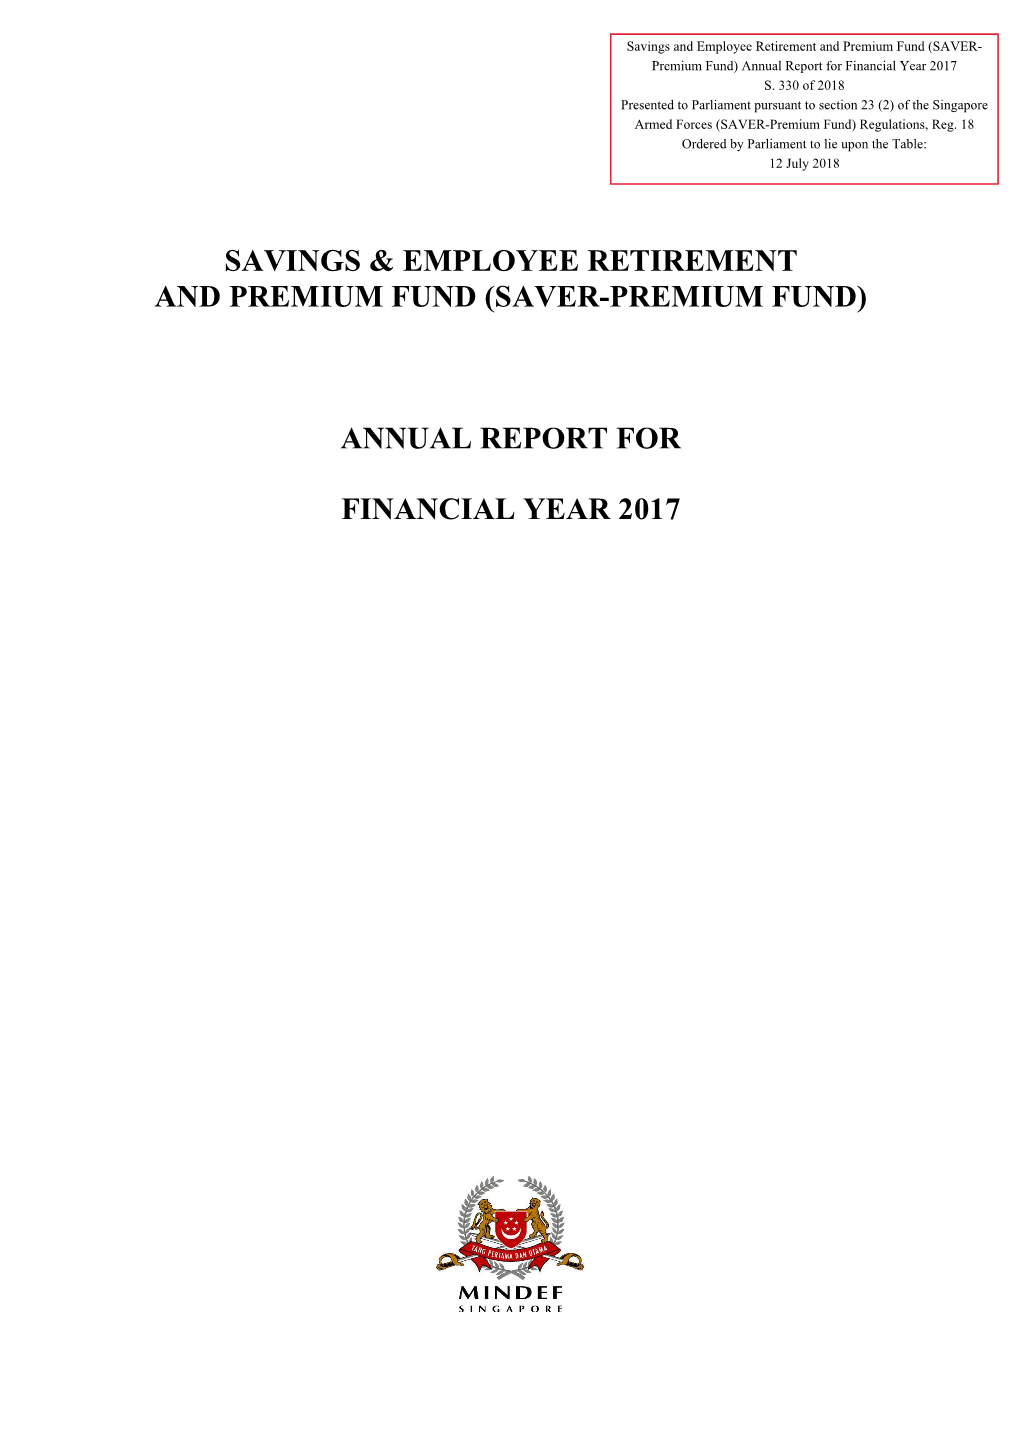 Savings & Employee Retirement and Premium Fund